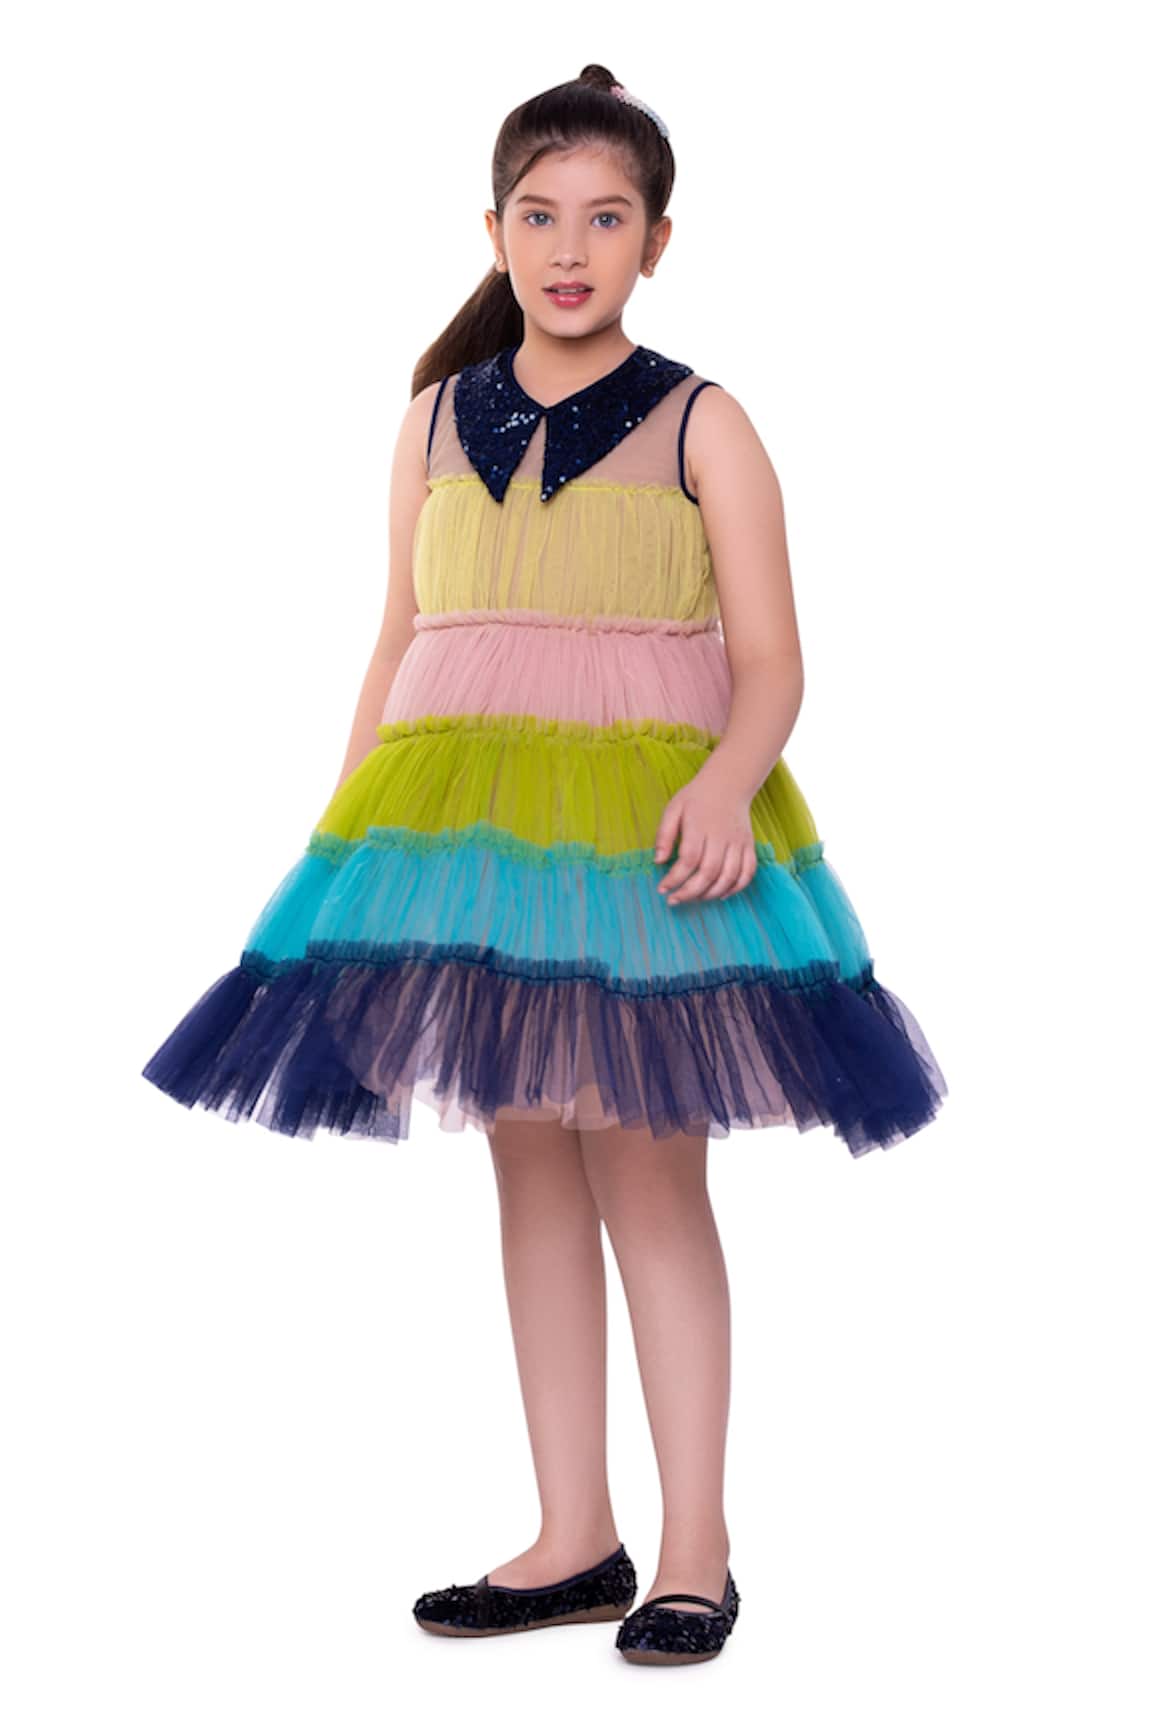 LittleCheer Cotton Candy Tiered Dress